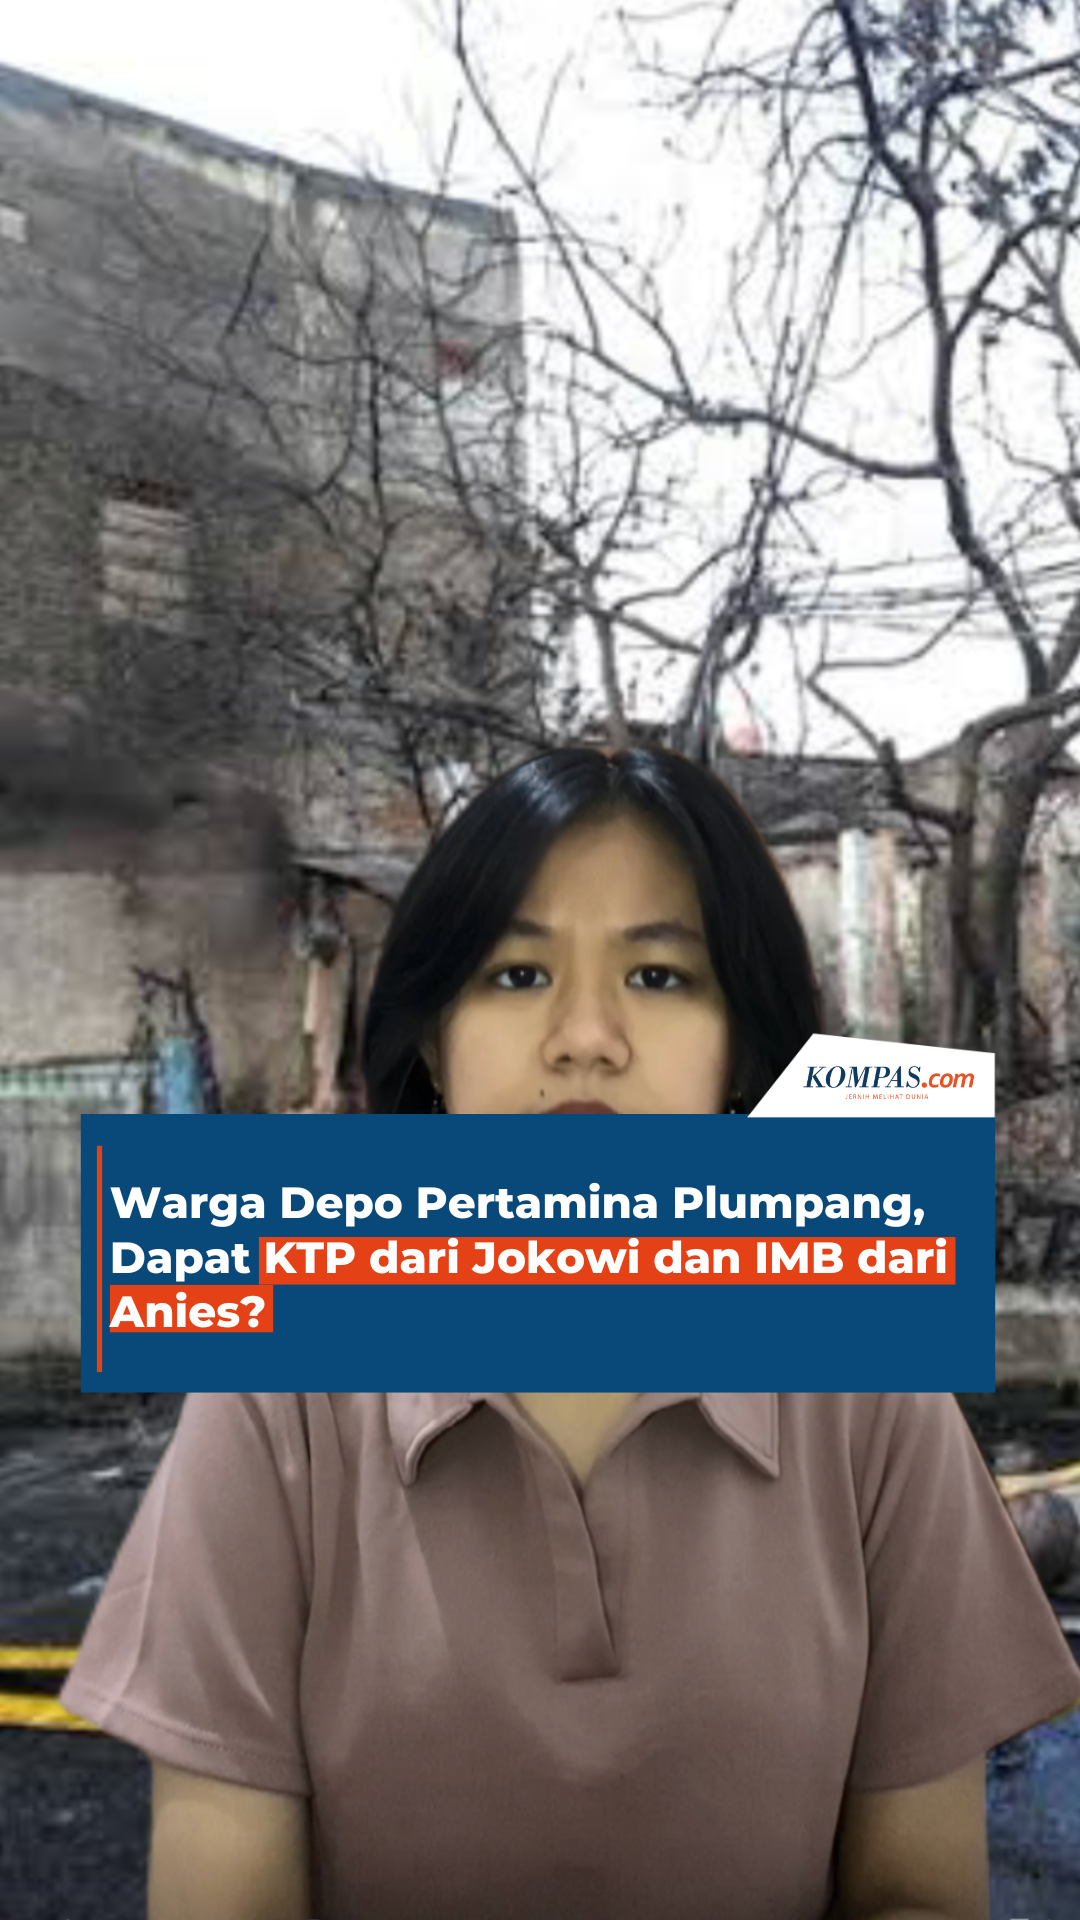 Warga Depo Pertamina Plumpang, Dapat KTP dari Jokowi dan IMB dari Anies?